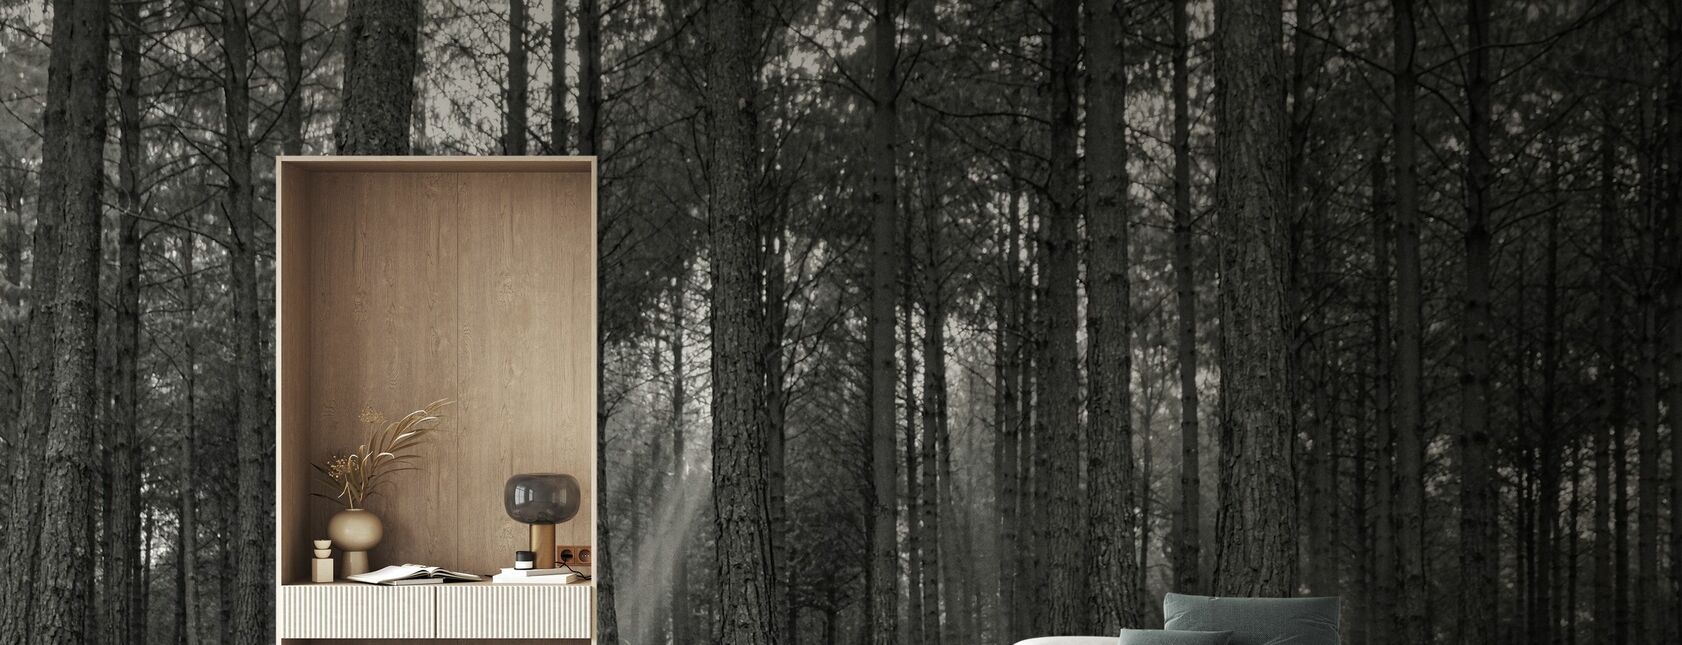 Forest Landscape - BW - Wallpaper - Living Room